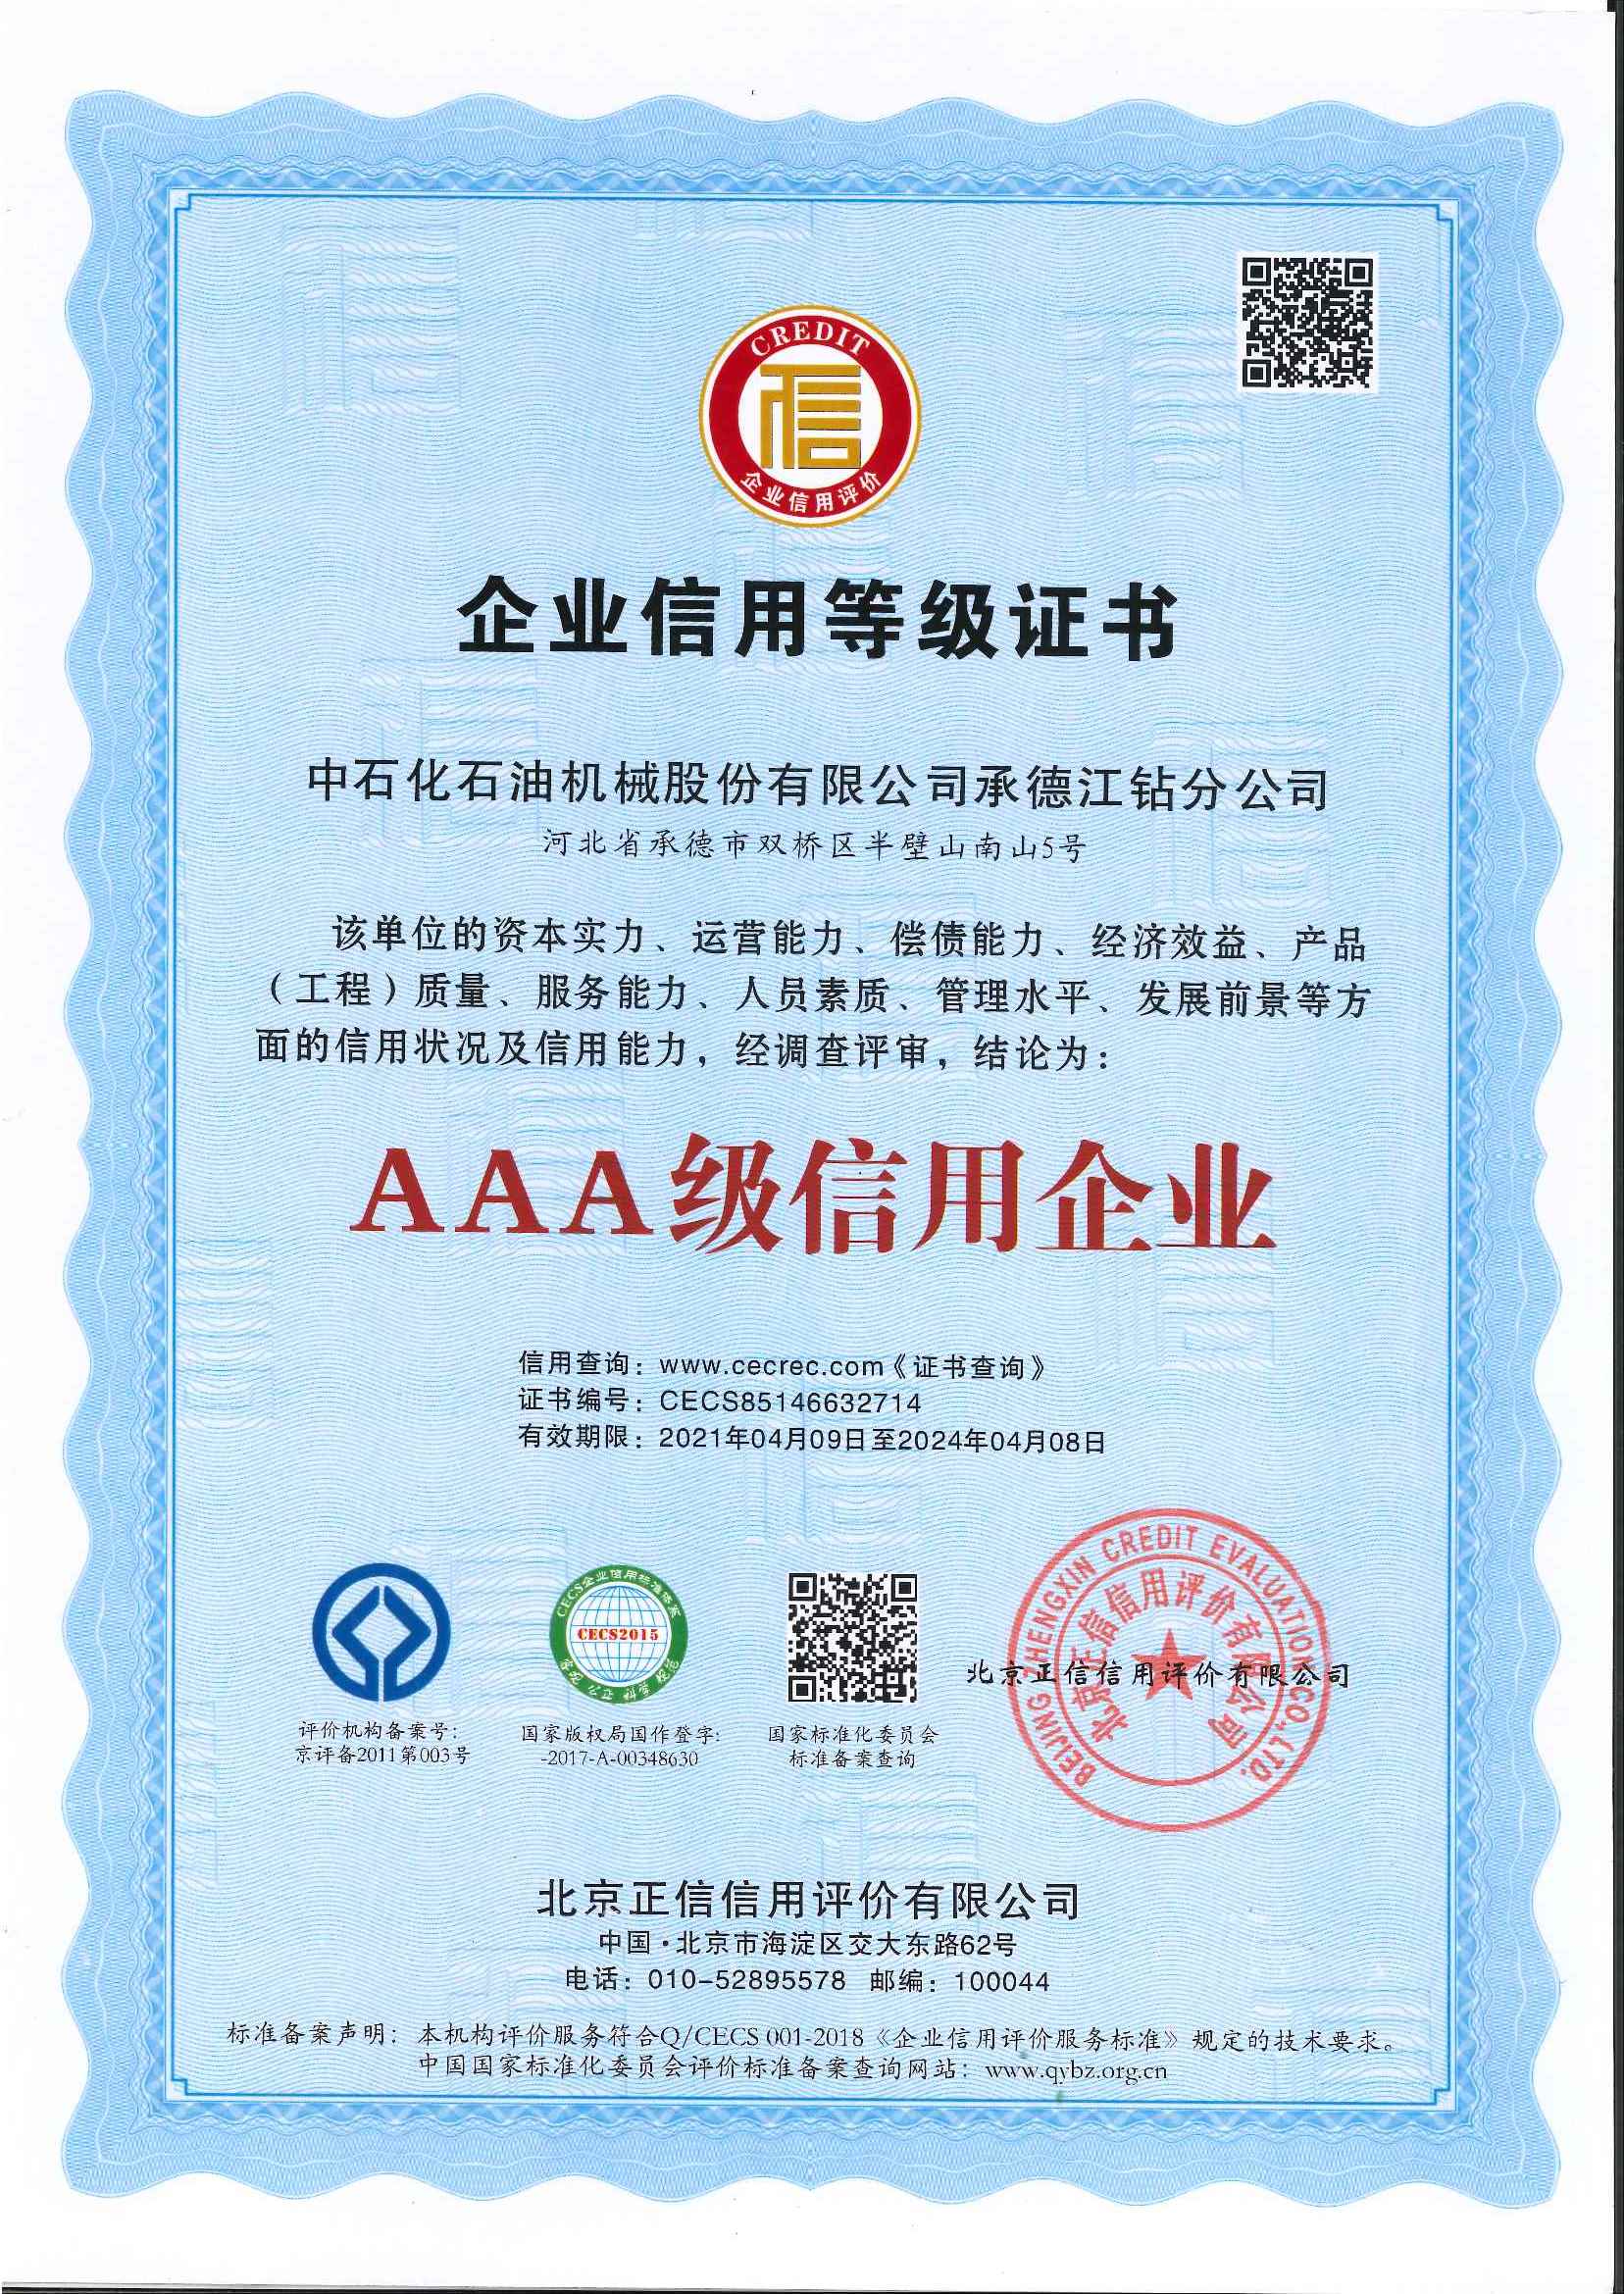 AAA Enterprise Credit Rating Certificate (kínverskt) 2024yv1